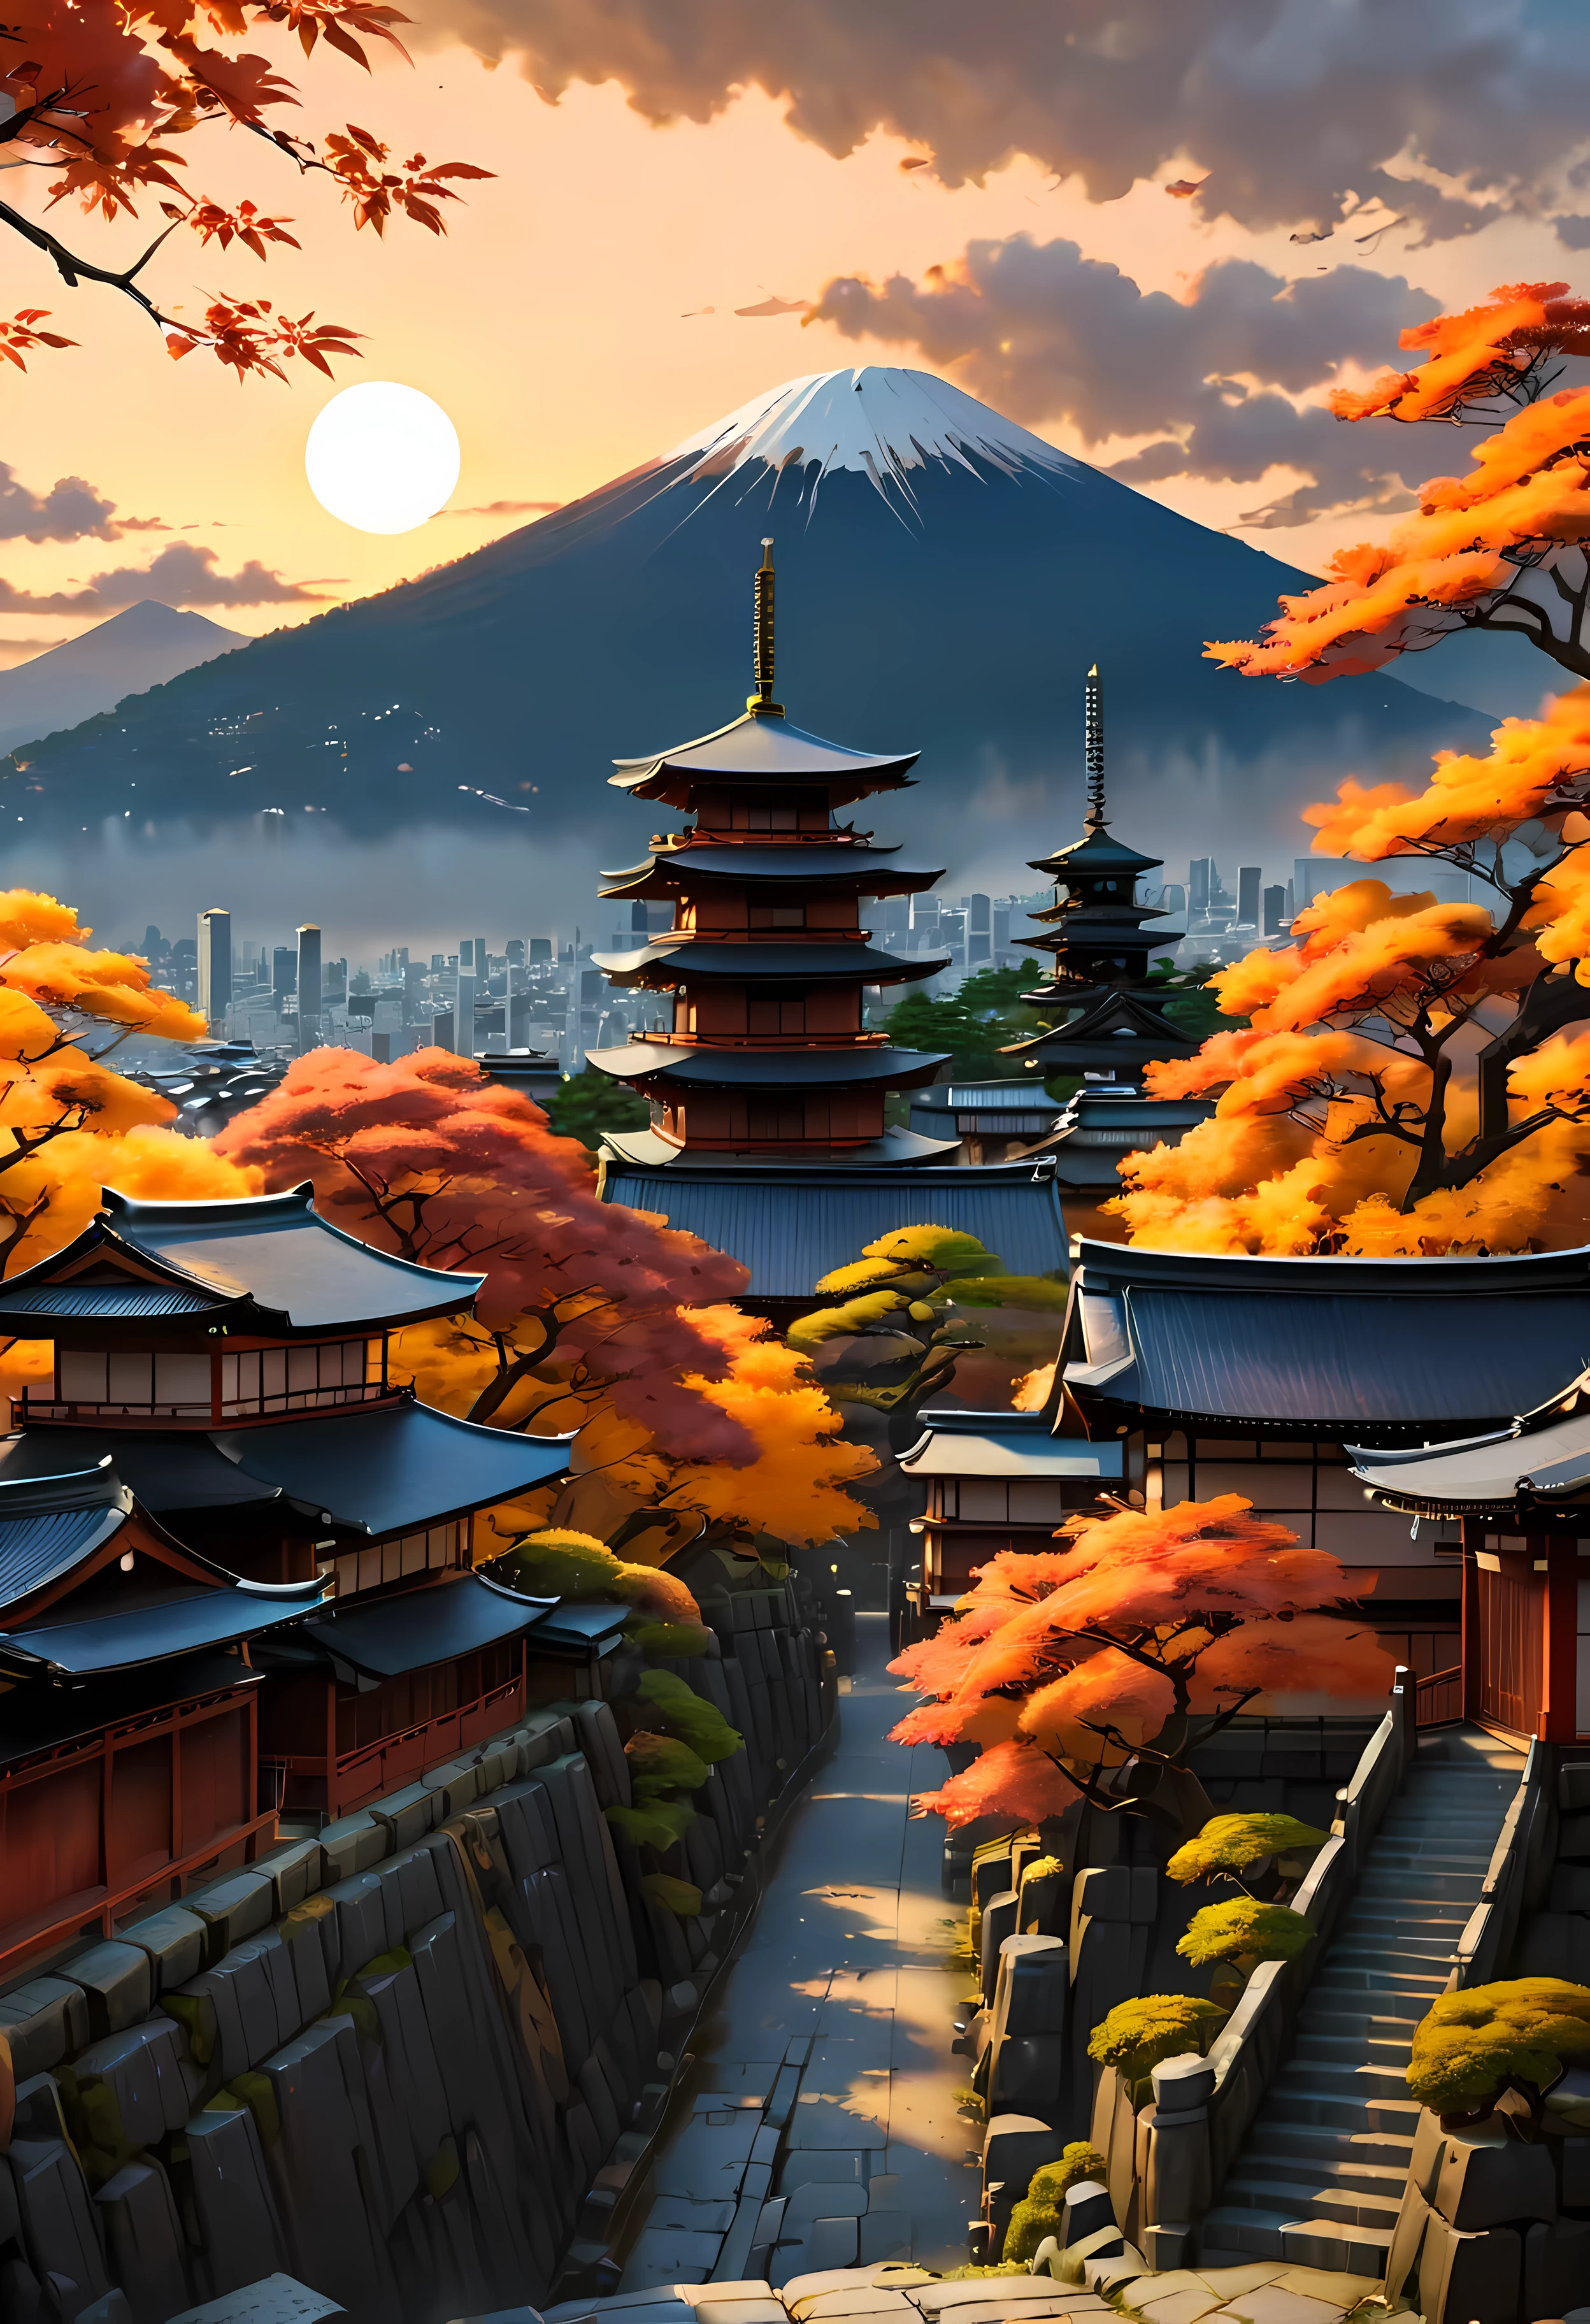 L&#39;arbre d&#39;automne rouge sur la terrasse du parc surplombe l&#39;ancienne ville de Kyoto avec vue sur la montagne, paysage de ville antique fascinant baigné par la lumière du coucher du soleil,((heure d&#39;or):1.2),((Ville antique japonaise):1.2),((Ciel coucher de soleil à l&#39;automne):1.1),délicate lumière dorée de l&#39;heure, fonds d&#39;écran incroyables, un cadre magnifique, peinture mate optimiste, Belle œuvre d&#39;art numérique, Ville antique japonaise background, Scènes belles et détaillées, UHD sous terre, Paysage UHD, Art conceptuel majestueux, belle ville antique. |(Chef-d&#39;œuvre en résolution maximale de 16K), La meilleure qualité, (qualité de fond d&#39;écran CG Unity 16k très détaillée),(Couleurs douces Art numérique 16k très détaillé),Super détaillé. | image parfaite,16k UE5,peinture officielle, superfin, profondeur de champ, pas de contraste, Mise au point nette et nette, Professionnel, Pas de flou. | (((Plus de détails))).